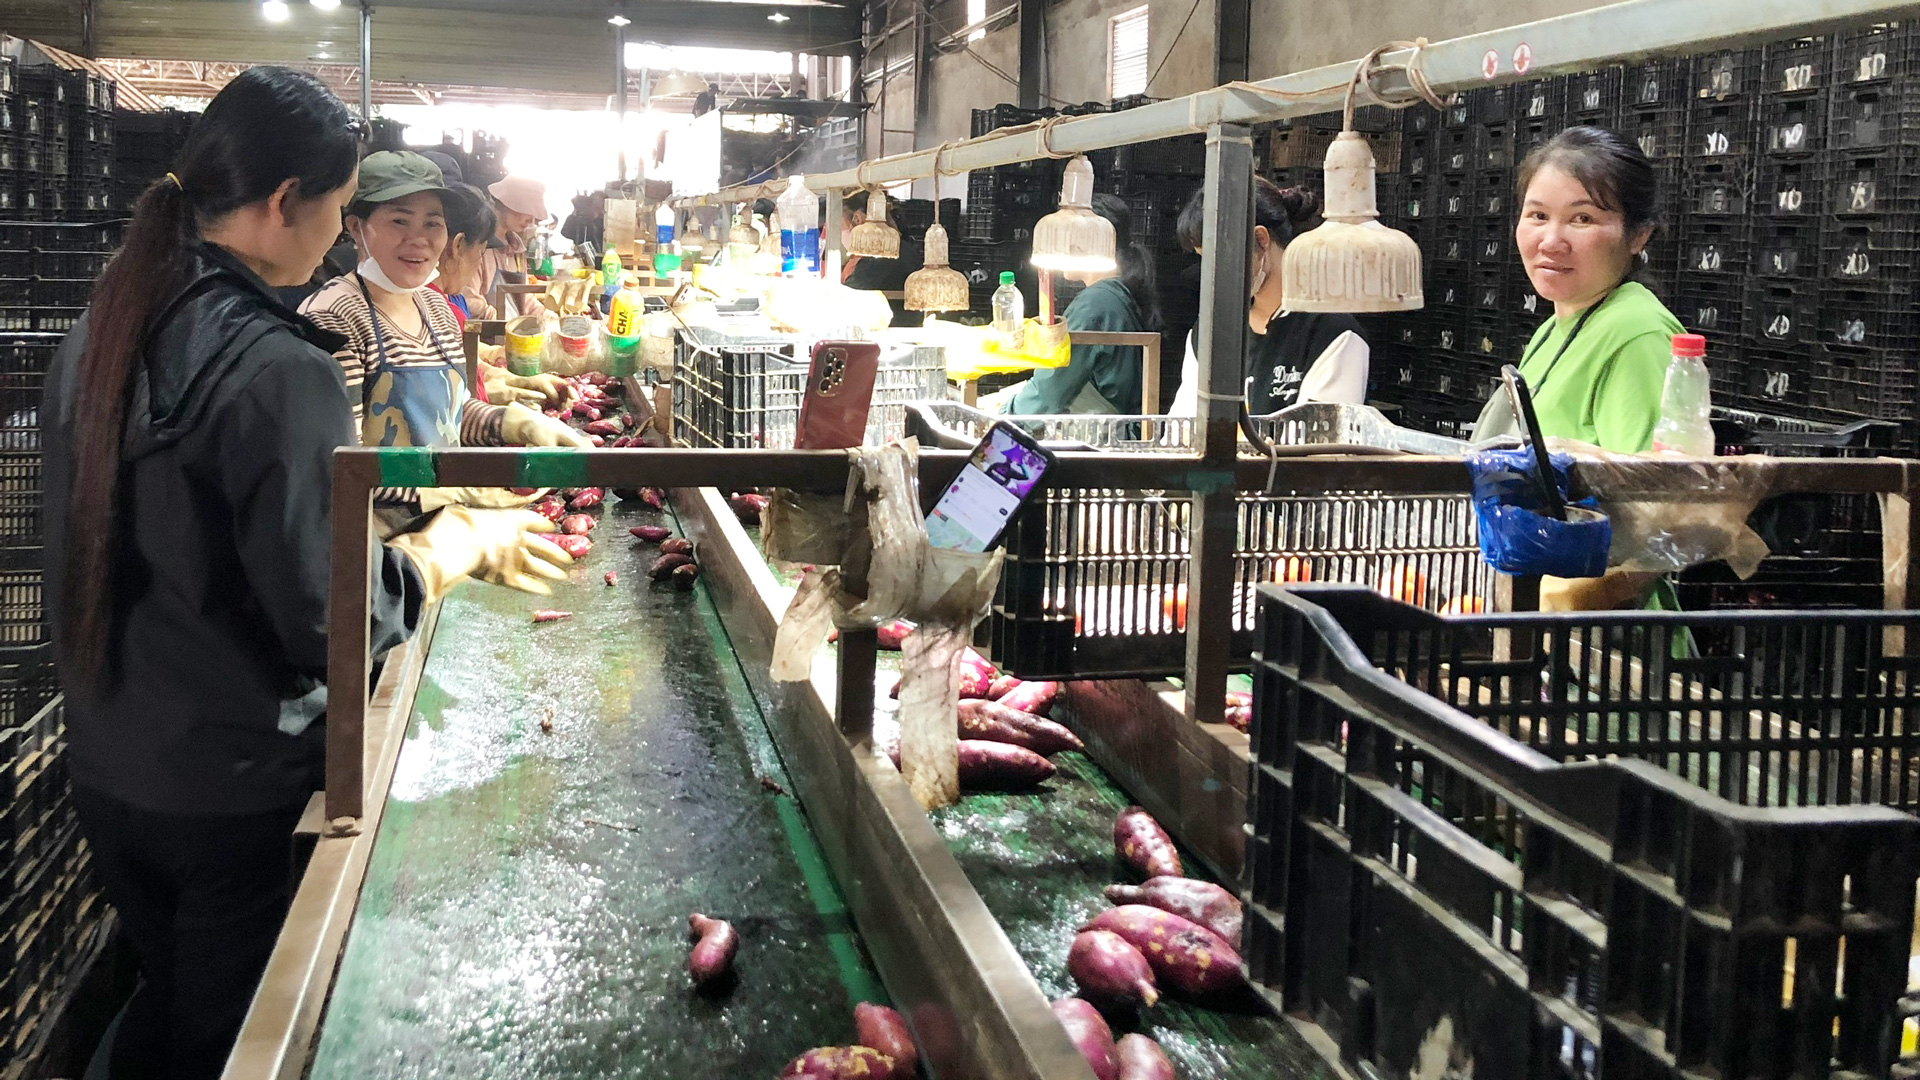 Từng là chủ vựa nông sản, cô gái Lâm Đồng liên kết trồng khoai lang xuất ngoại, mỗi tuần bán cả trăm tấn  - Ảnh 1.